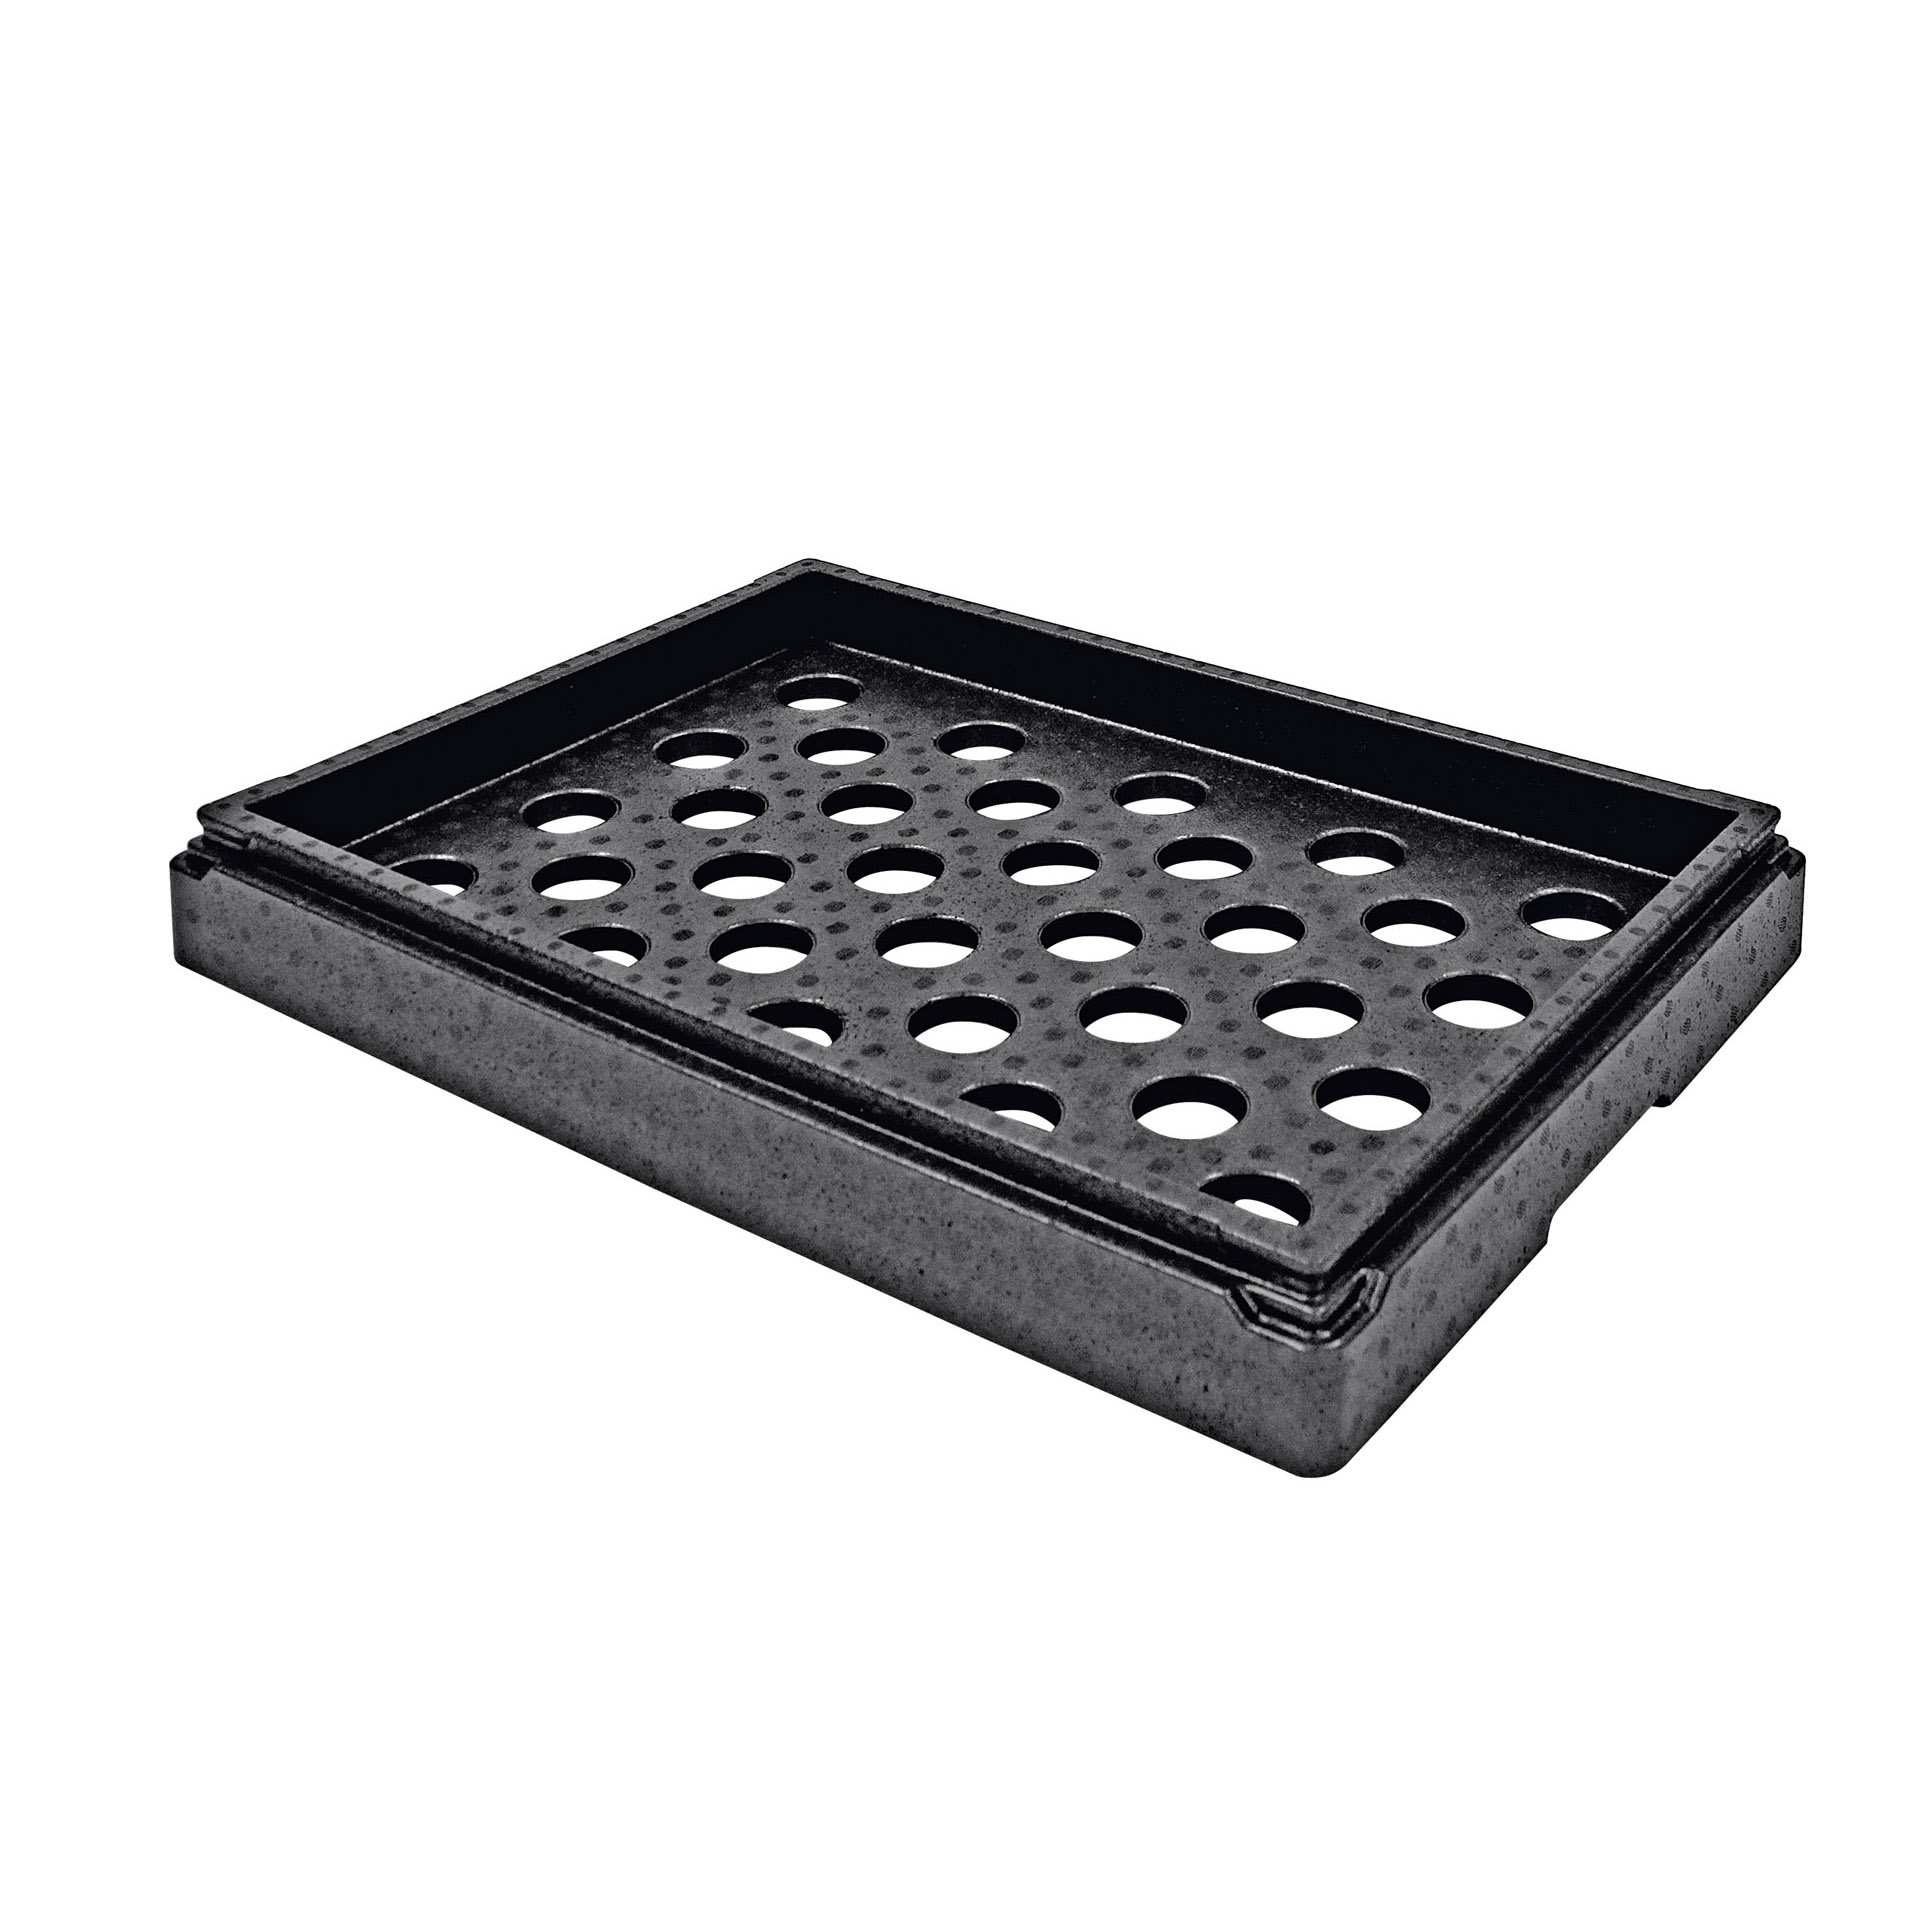 TOP-BOX - Aufsatz - Hot & Cold - Abm. 68,5 x 48,5 x 8,5 cm - EPP - 640900-C